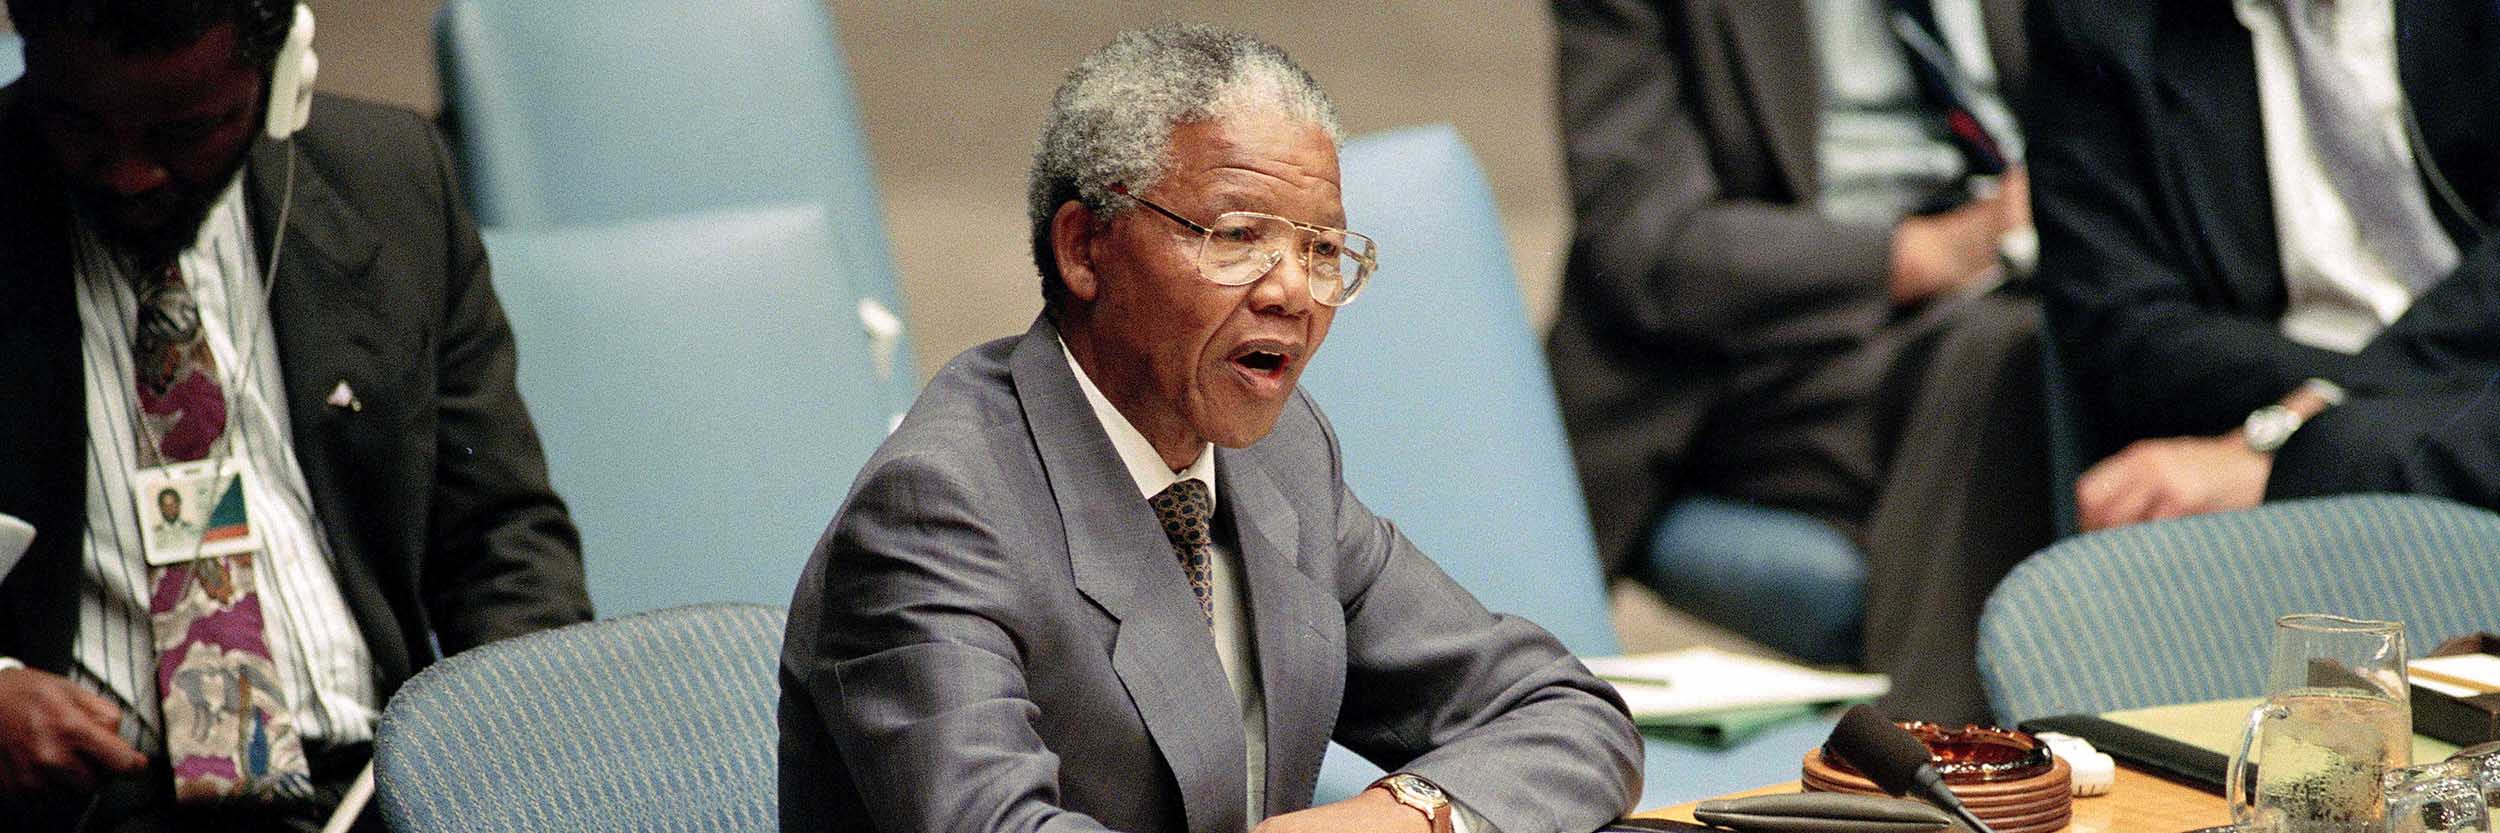 Ο Νέλσον Μαντέλα, Πρόεδρος του Αφρικανικού Εθνικού Κογκρέσου (ANC), απευθύνεται στο Συμβούλιο Ασφαλείας, Ιούλιος 1992